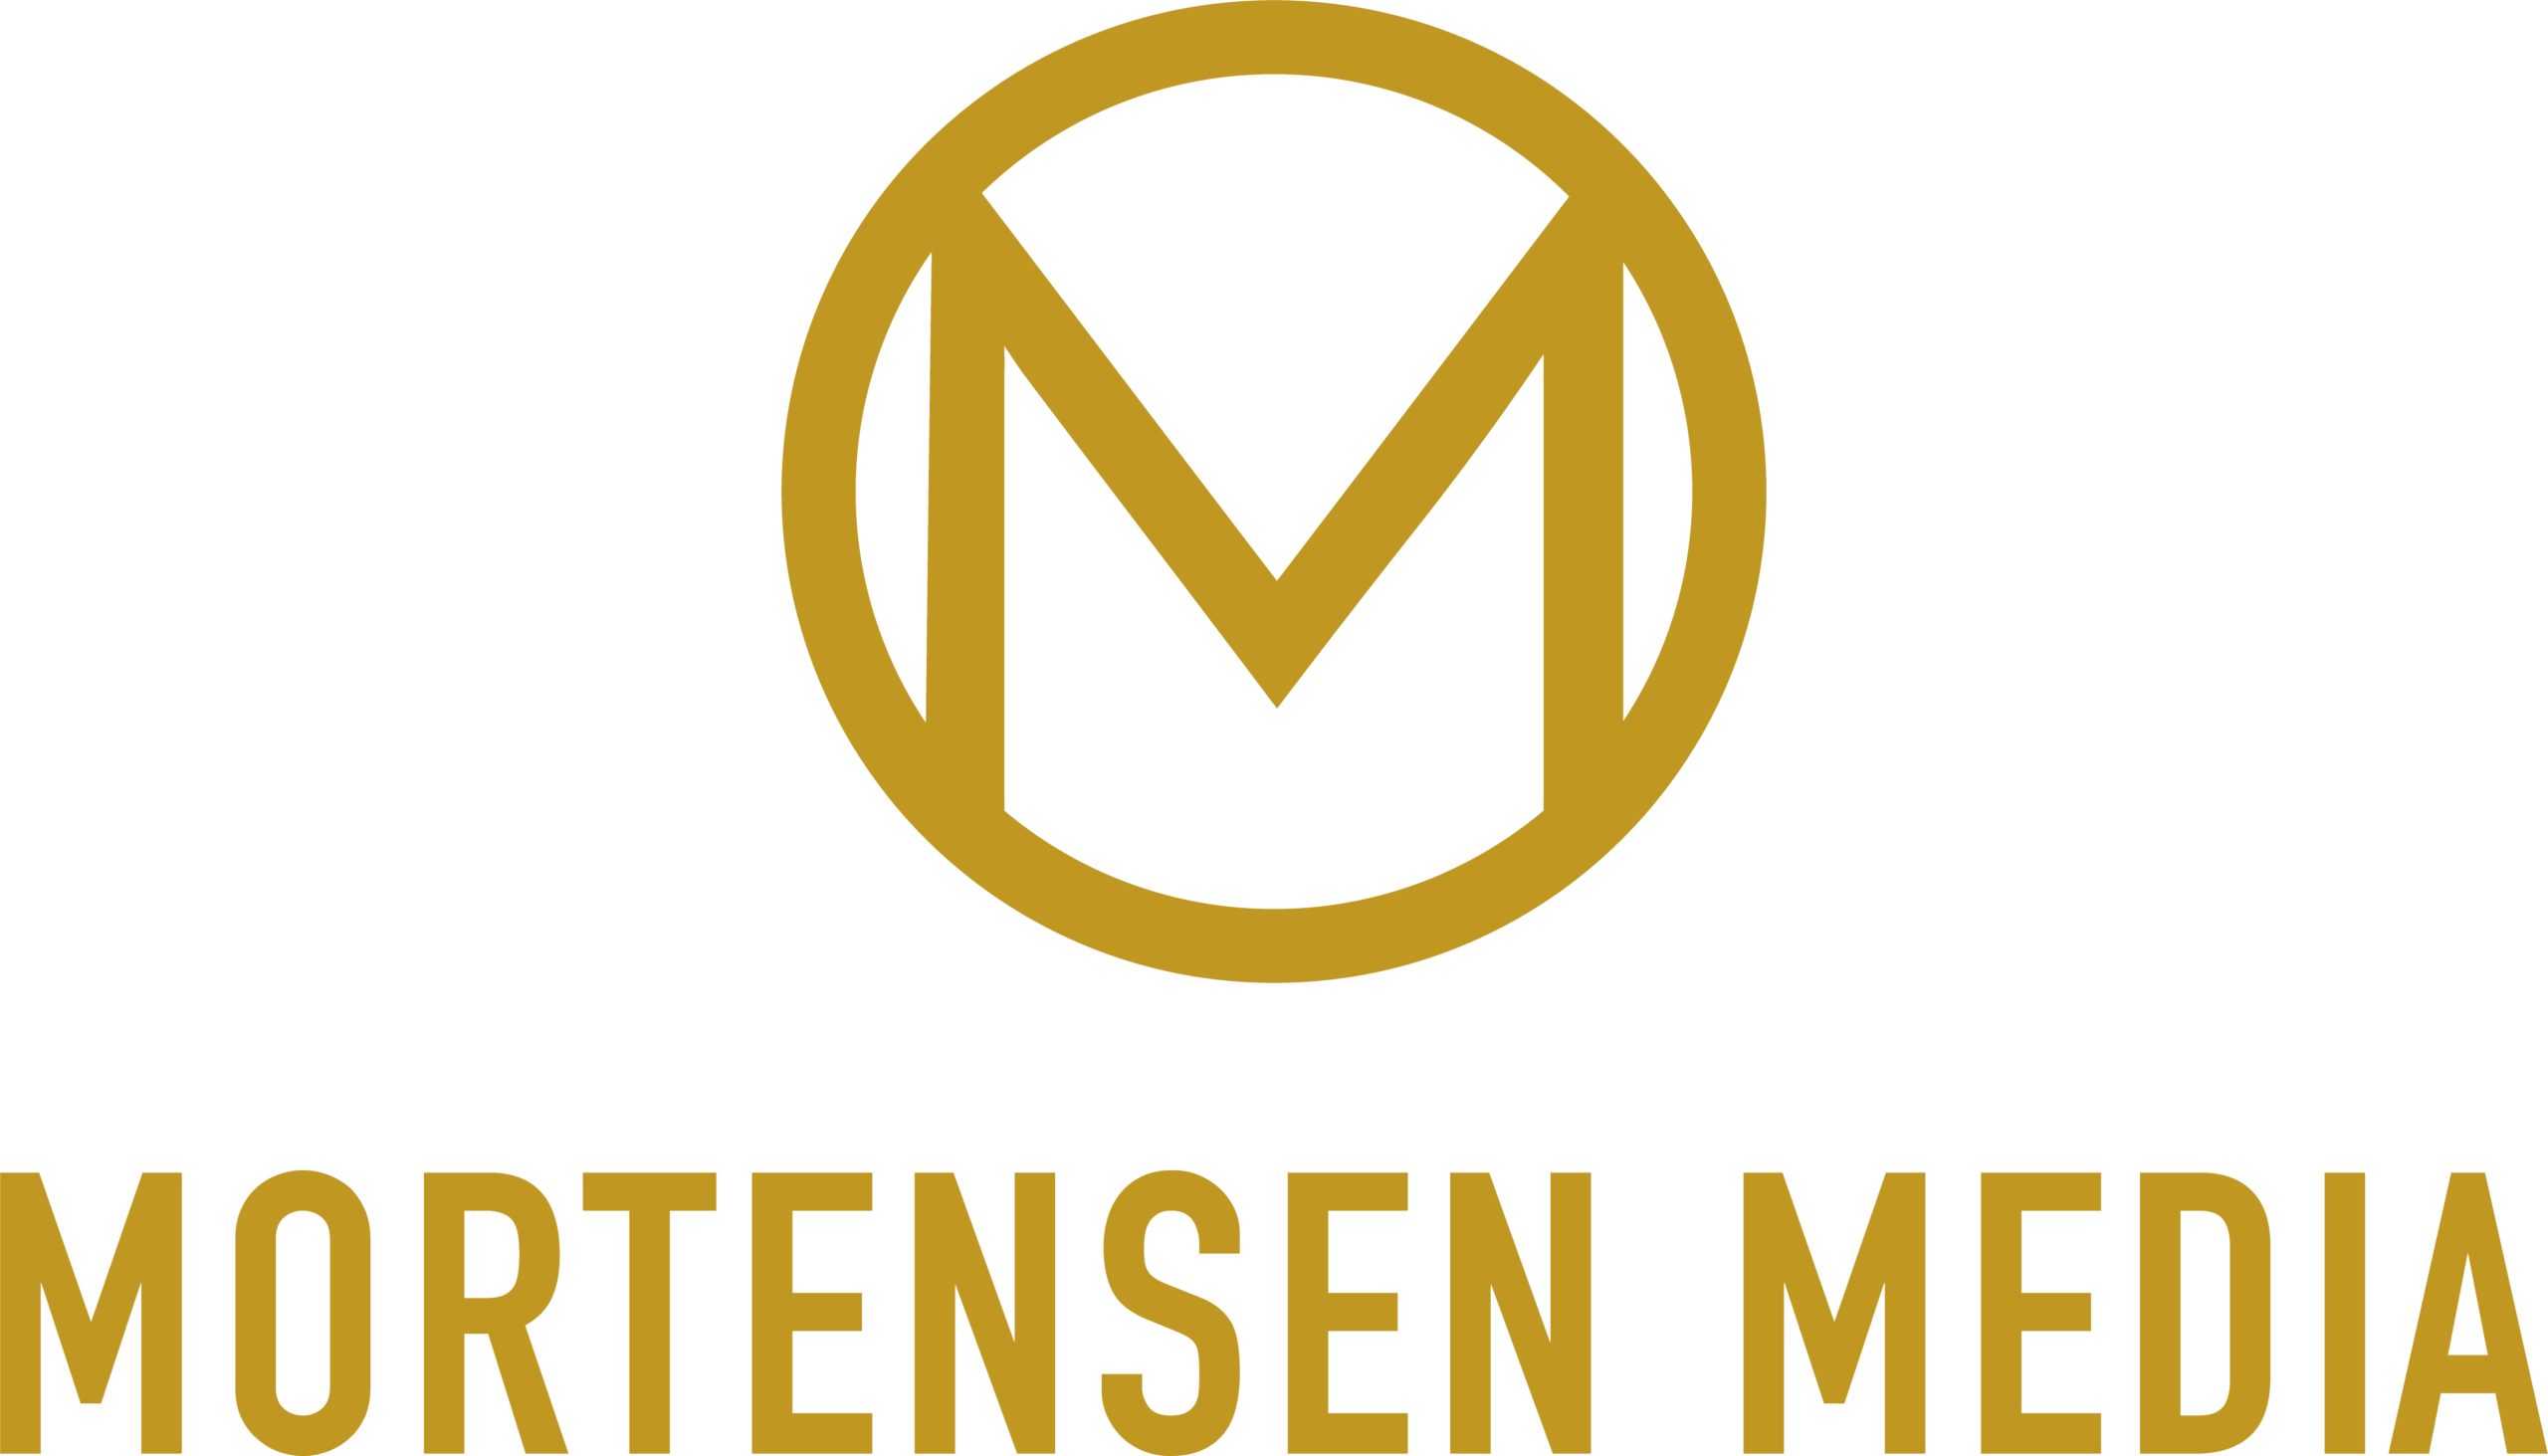 Mortensen Media